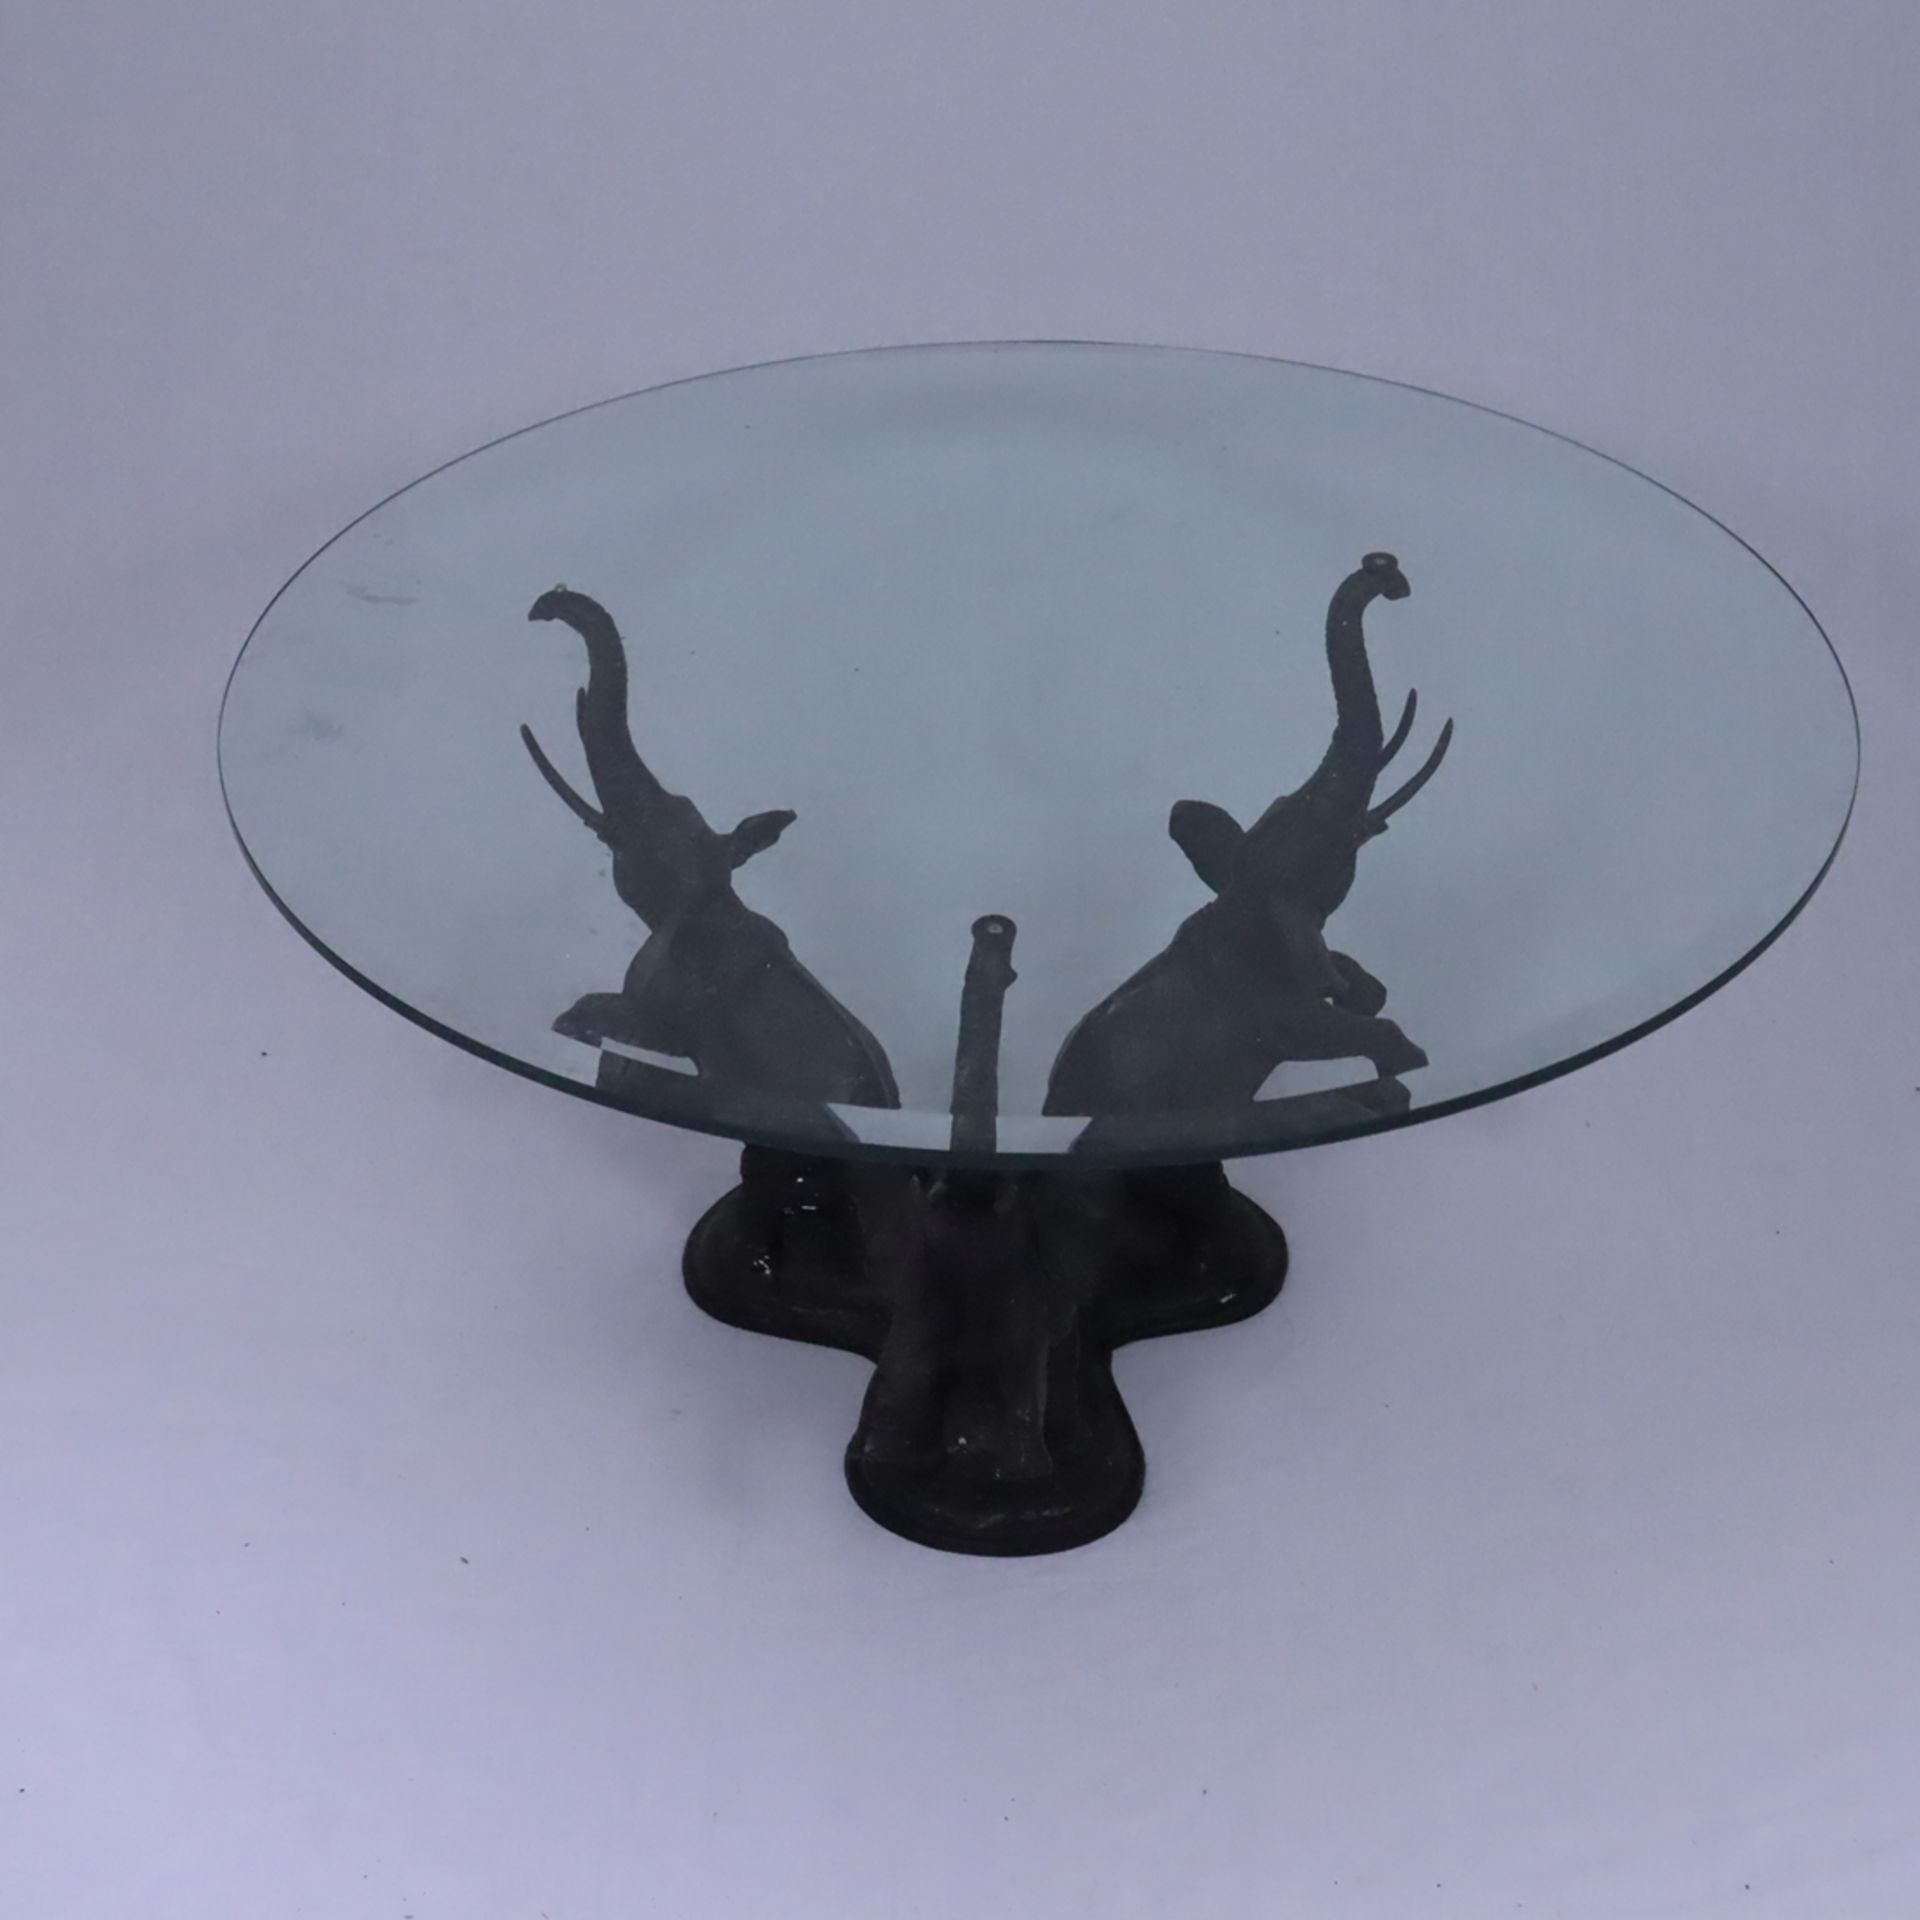 Tisch mit Elefantenmotiven - Thailand, 20.Jh., Bronze/Glas, Bronzegestell in Form von drei aufsteig